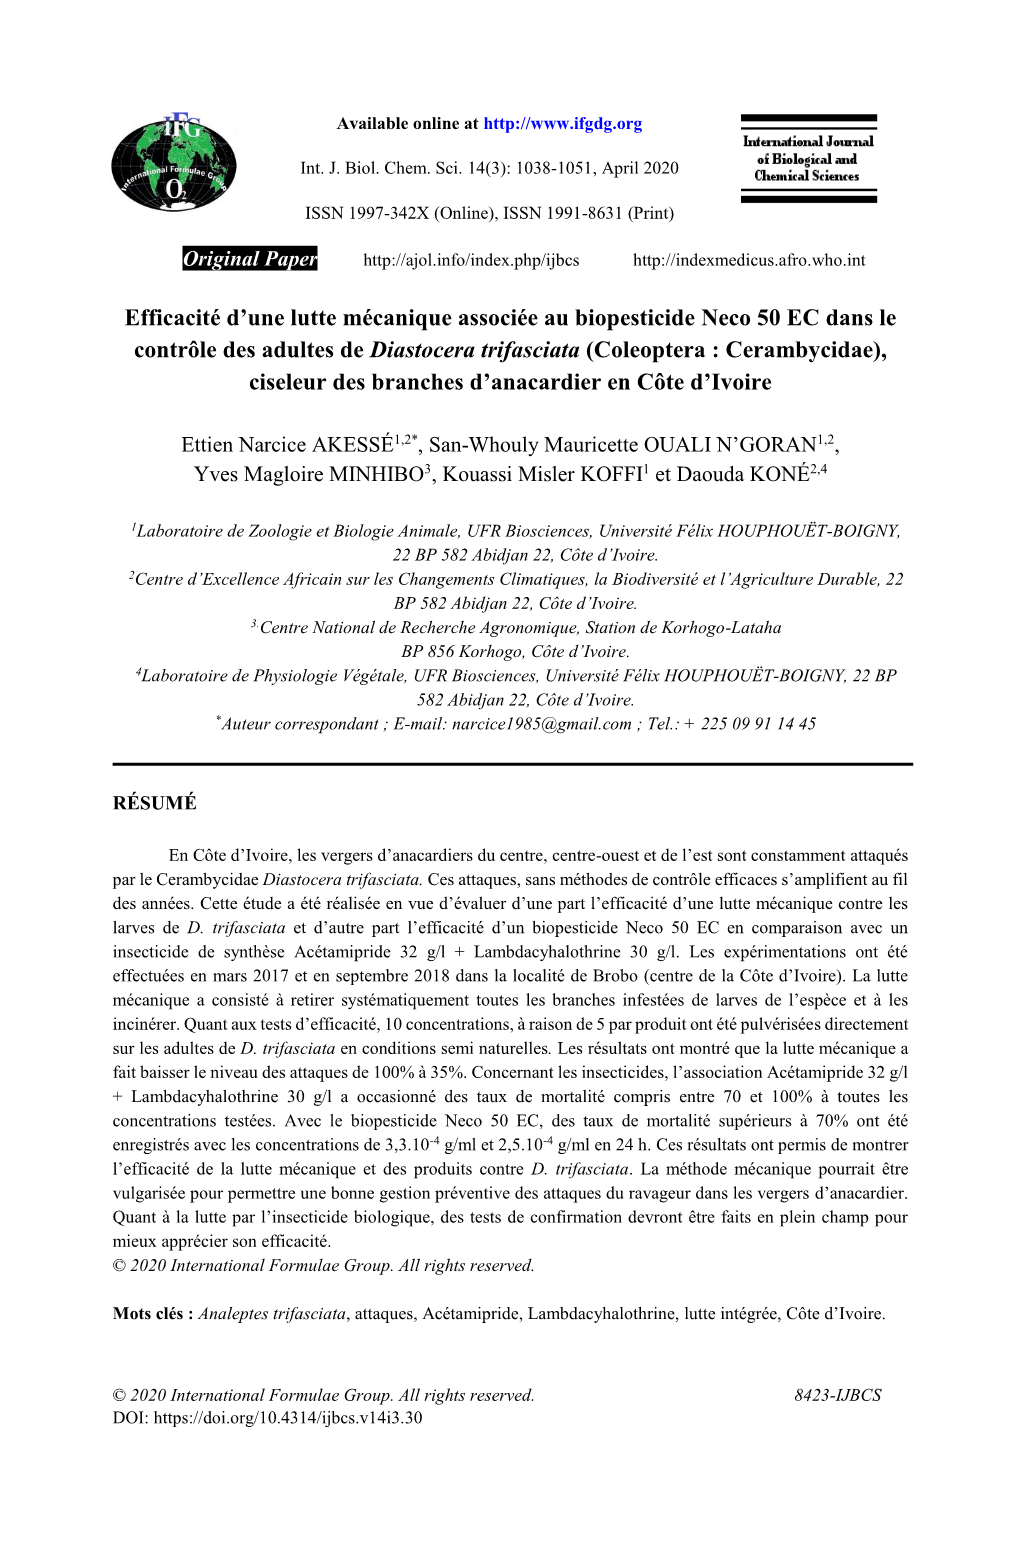 Efficacité D'une Lutte Mécanique Associée Au Biopesticide Neco 50 EC Dans Le Contrôle Des Adultes De Diastocera Trifasciat